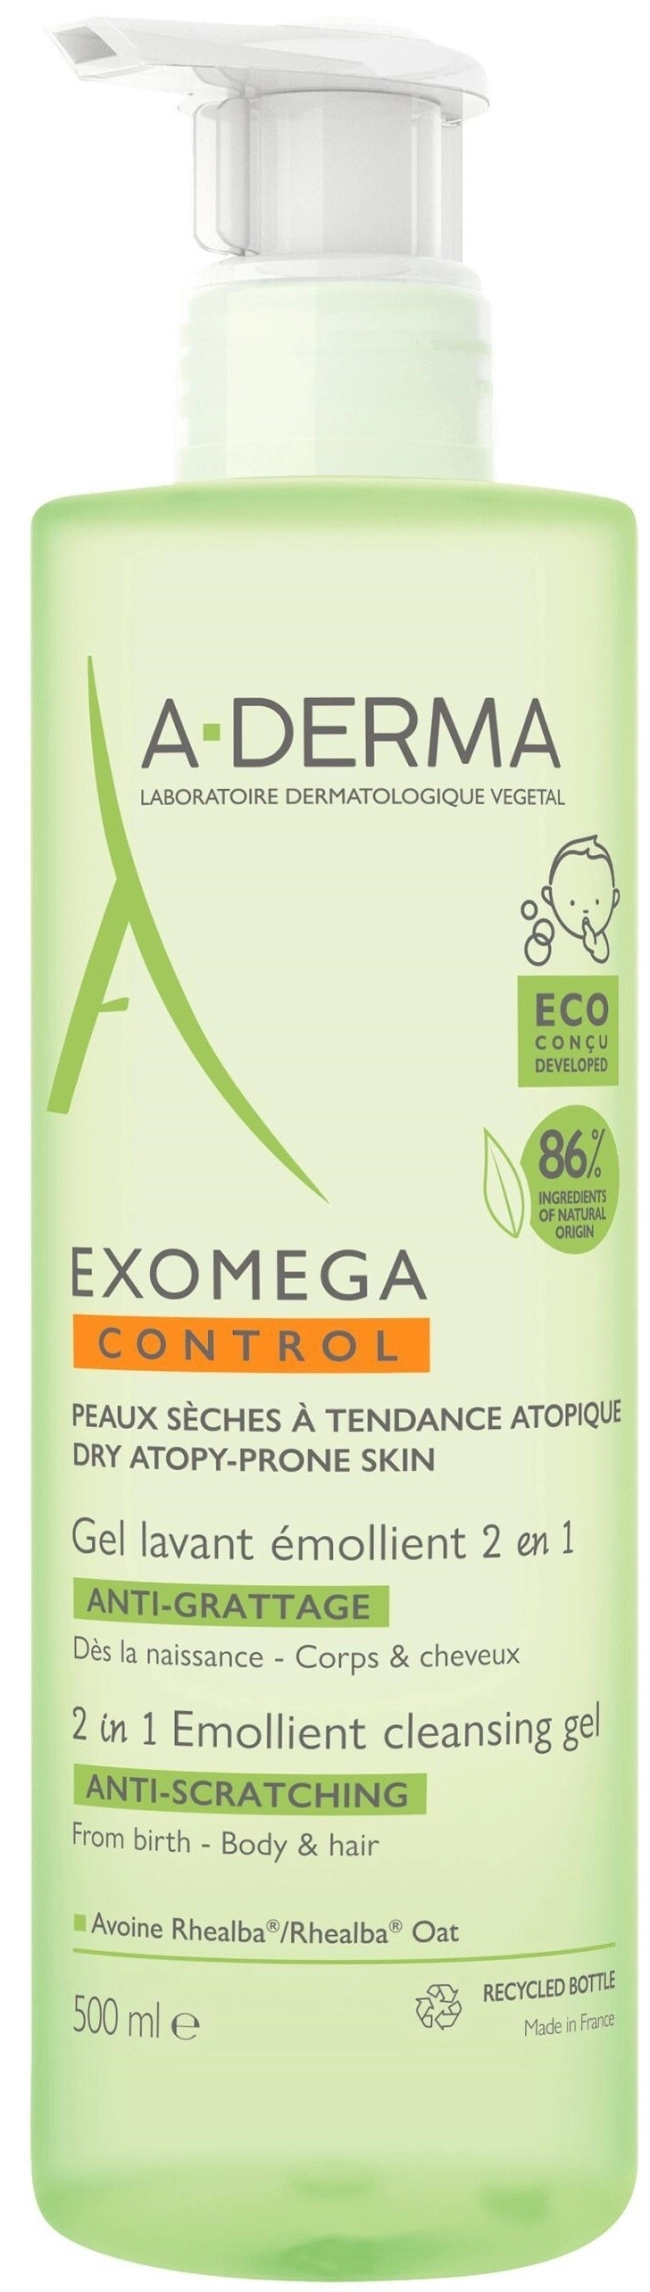 A-Derma Exomega Control Почистващ гел 2 в 1 за коса и тяло 500 мл